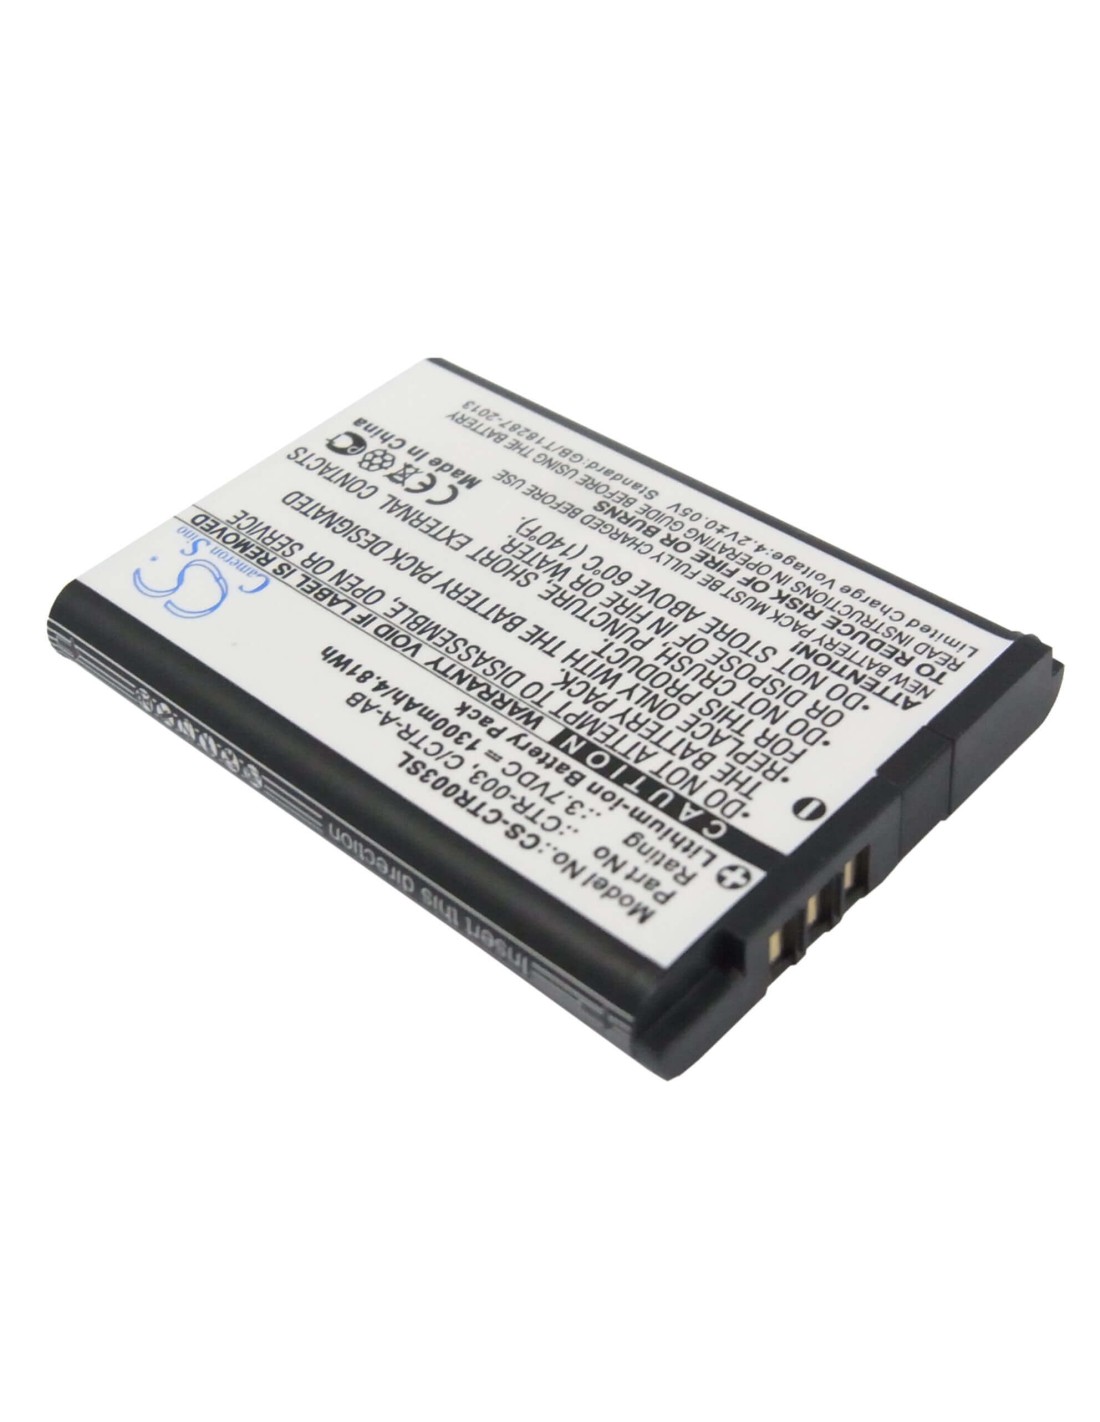 Battery for Nintendo 3ds, Ctr-001, Min-ctr-001 3.7V, 1300mAh - 4.81Wh